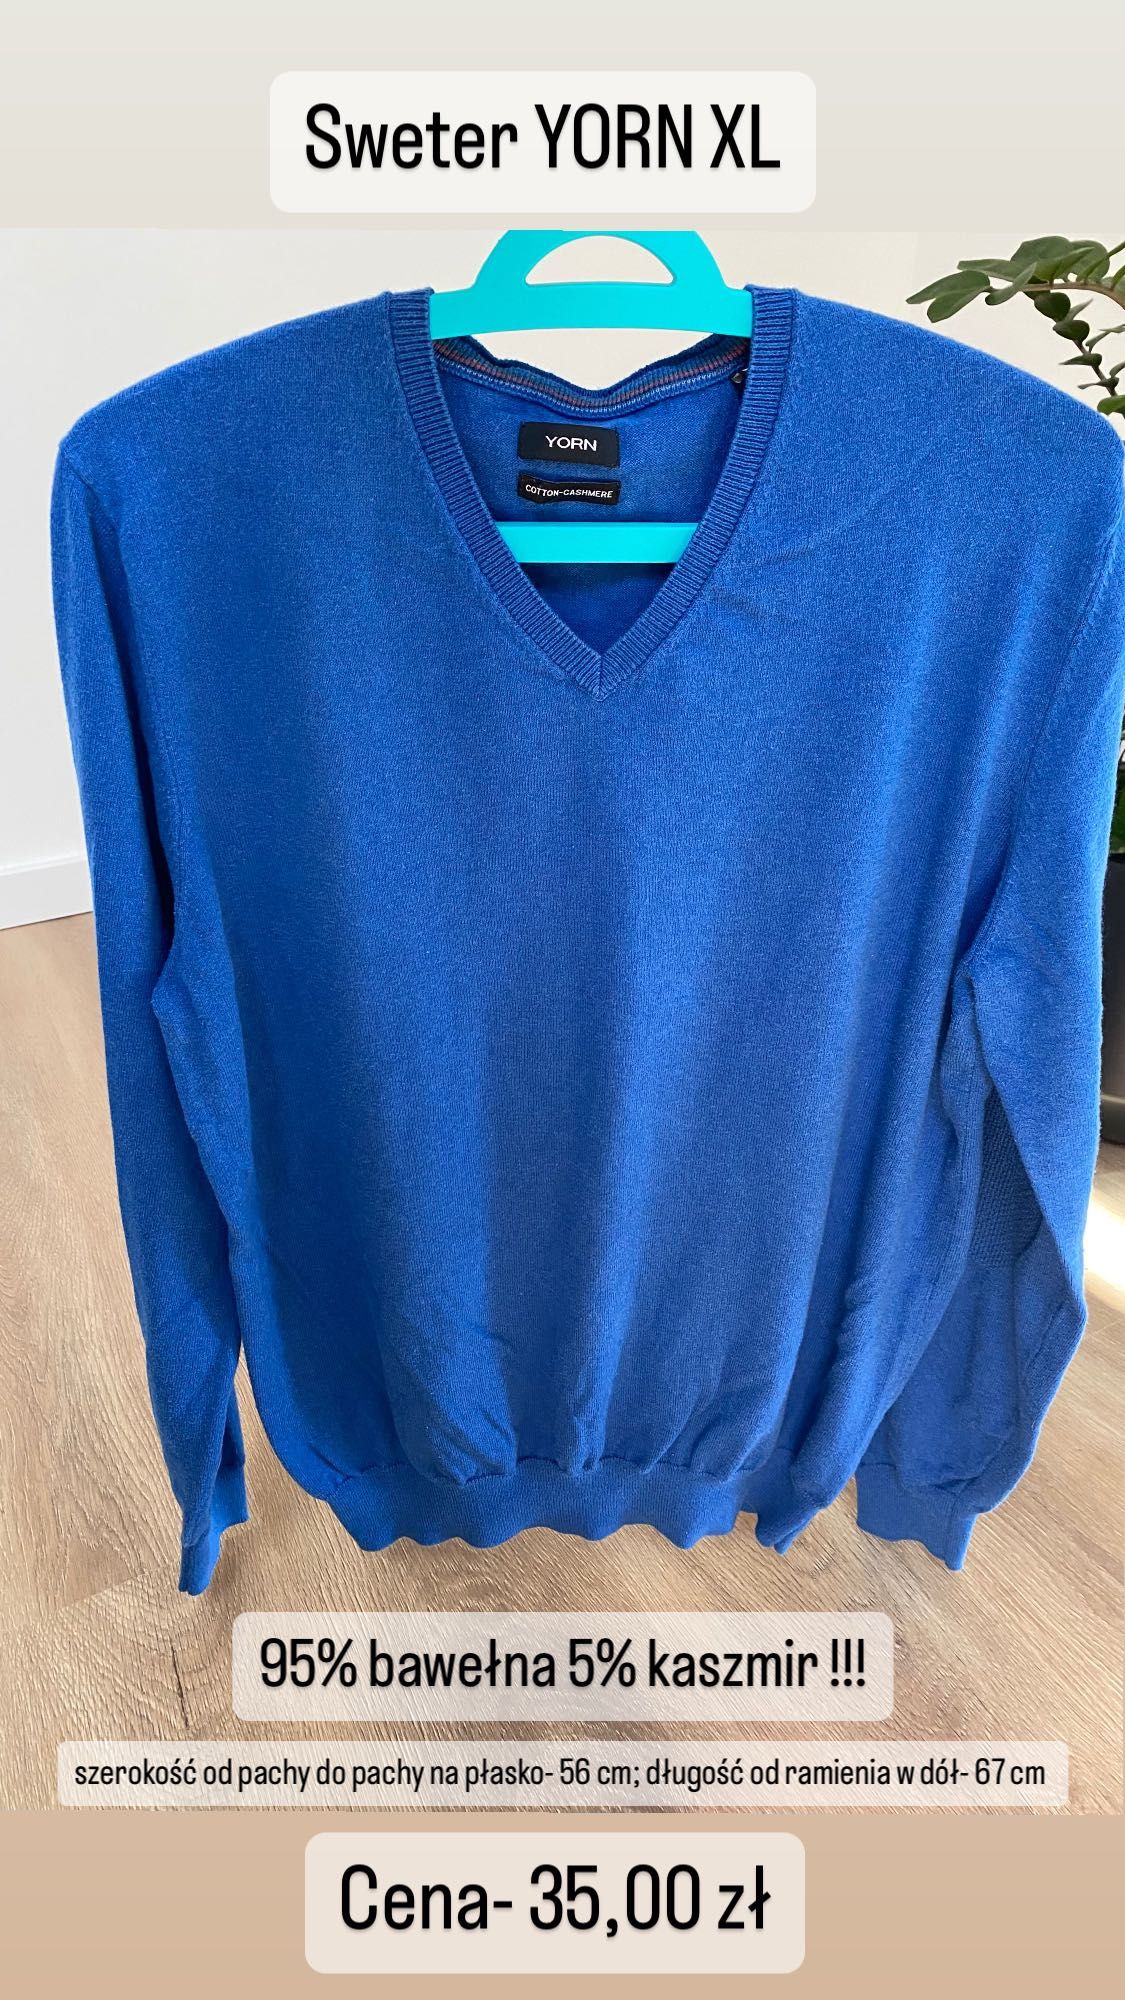 Sweter męski YORN XL 54 chabrowy niebieski bawełna kaszmir w szpic